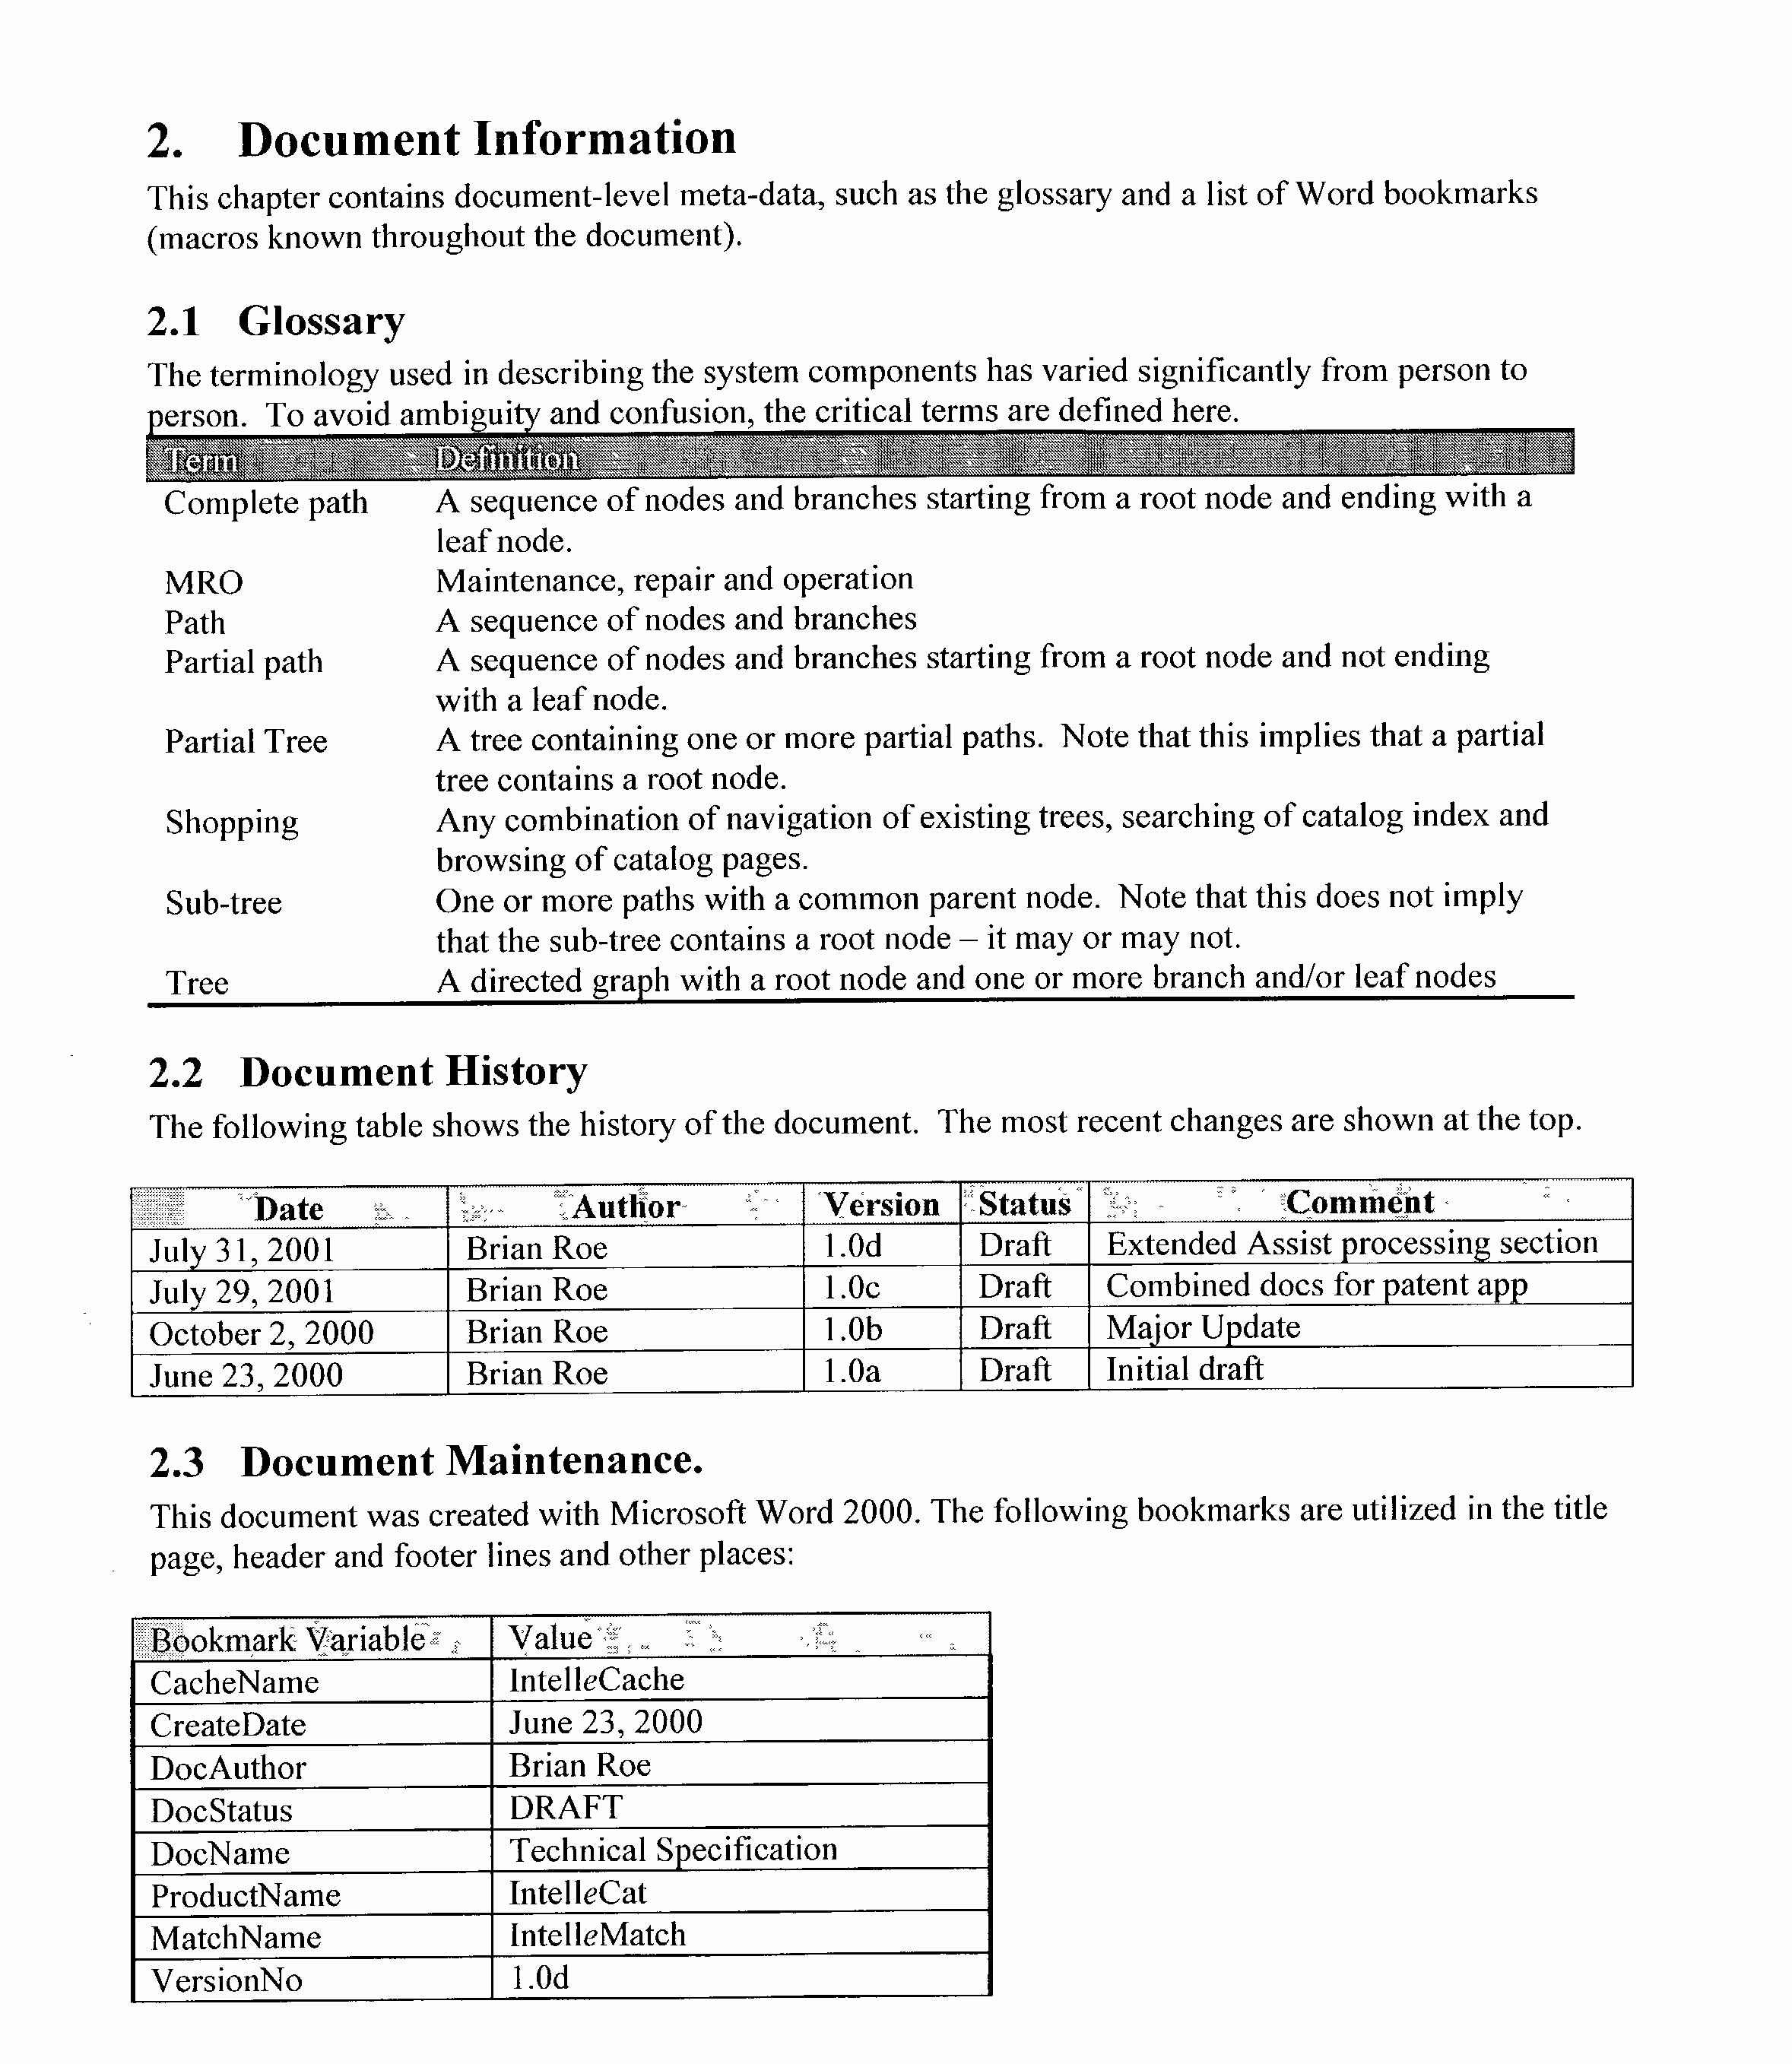 Resume For Graduate School Graduate School Resume Template Microsoft Word resume for graduate school|wikiresume.com